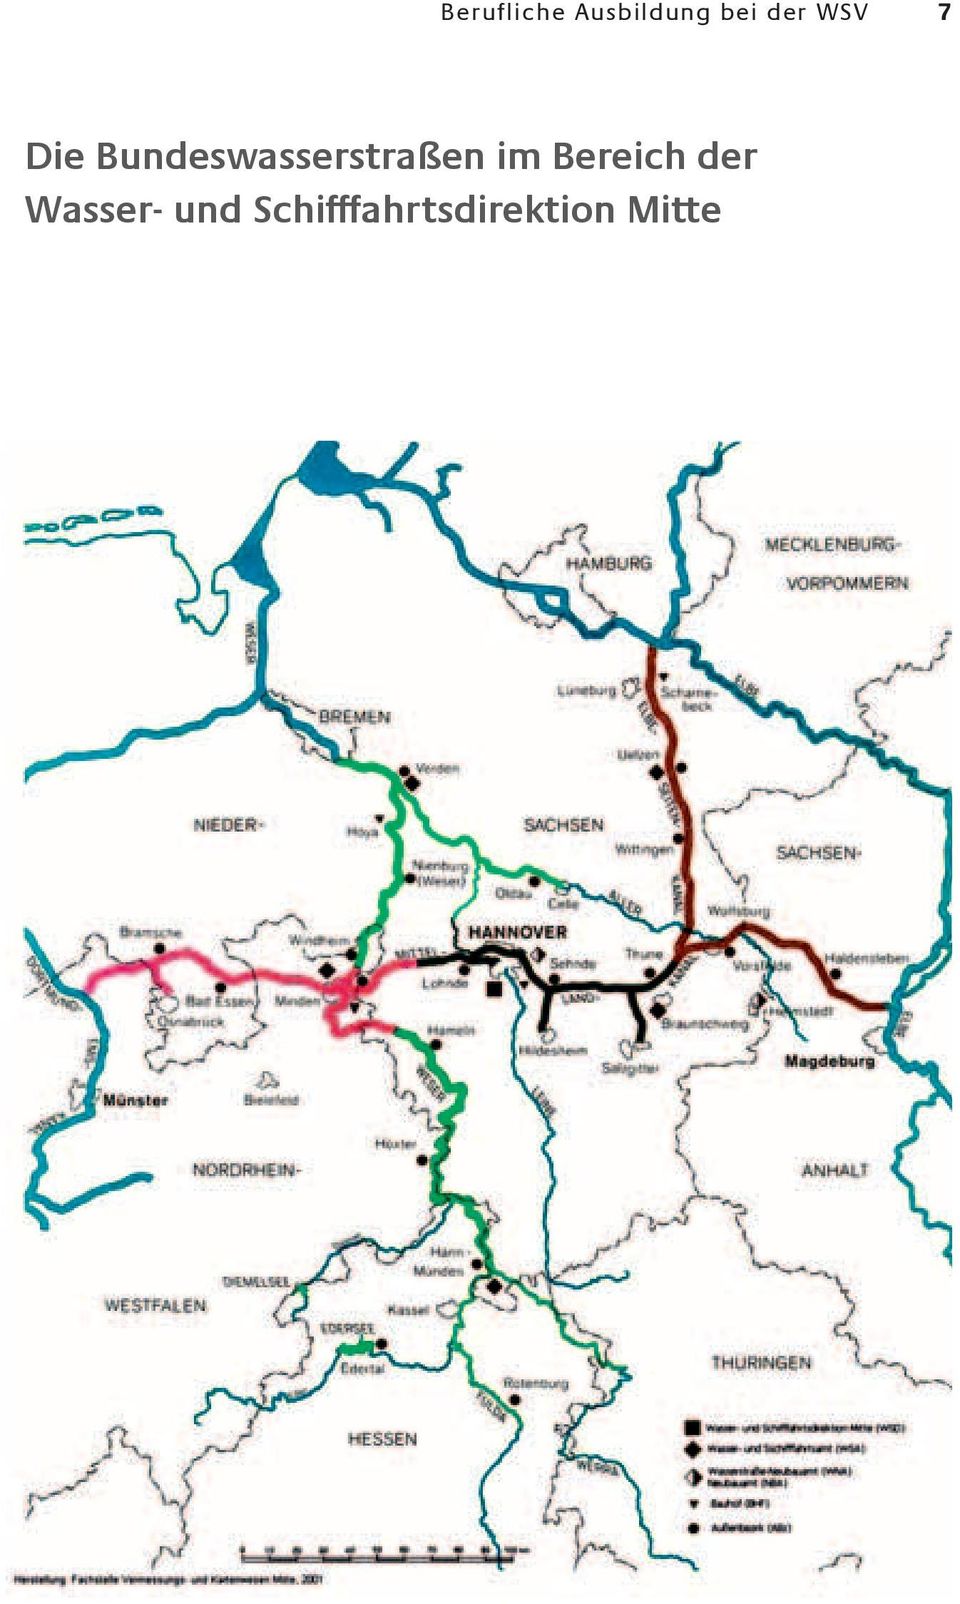 Bundeswasserstraßen im